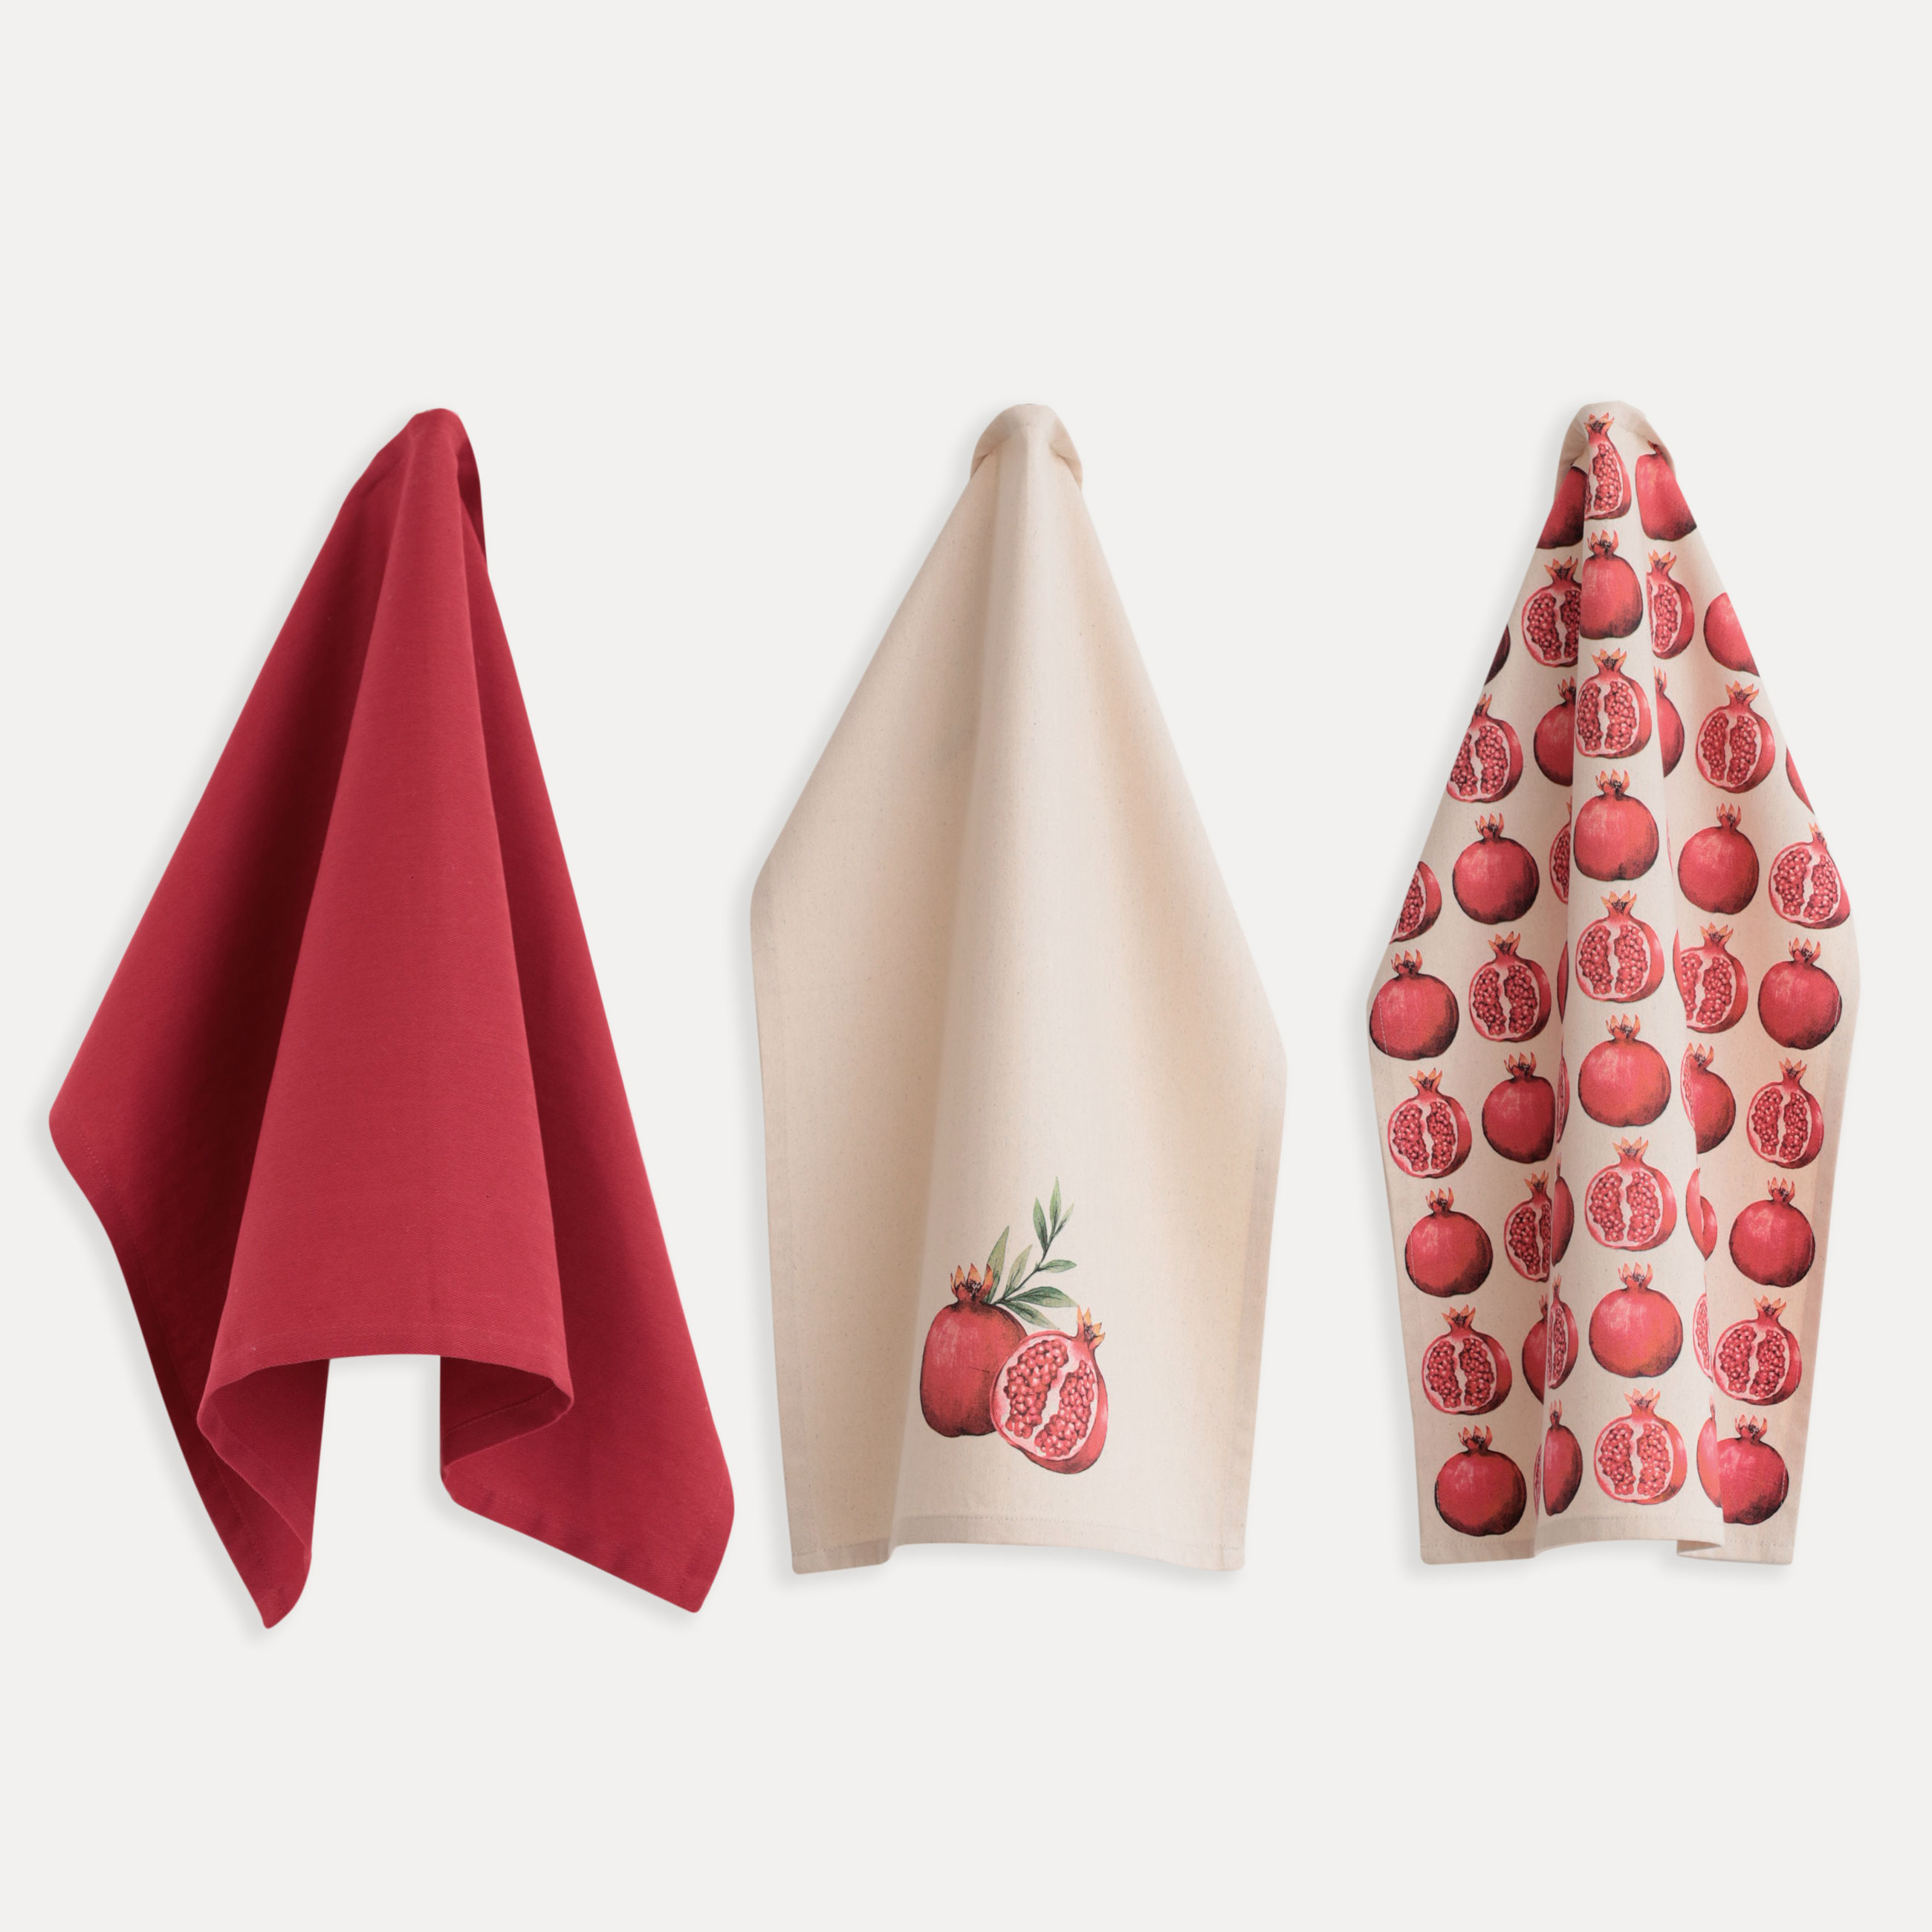 Полотенце кухонное, 40x60 см, 3 шт, хлопок, бежевое/красное, Гранаты, Pomegranate изображение № 5